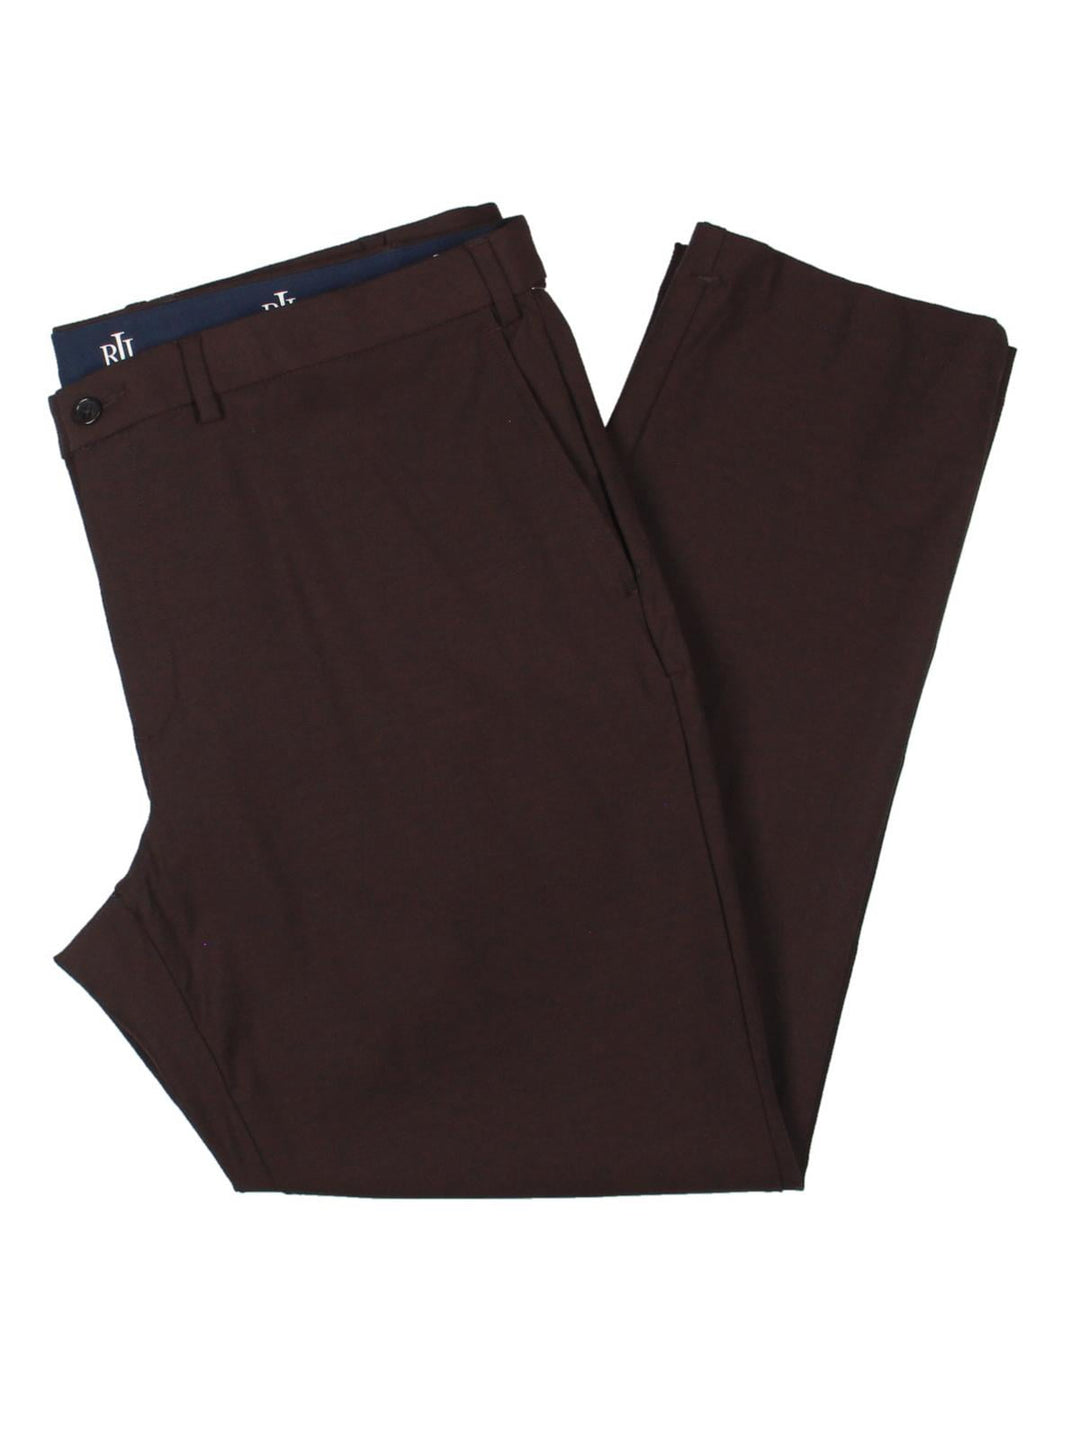 Ralph Lauren Men's Classic Fit Cotton Stretch Dress Pants Wine Red Size 33X32